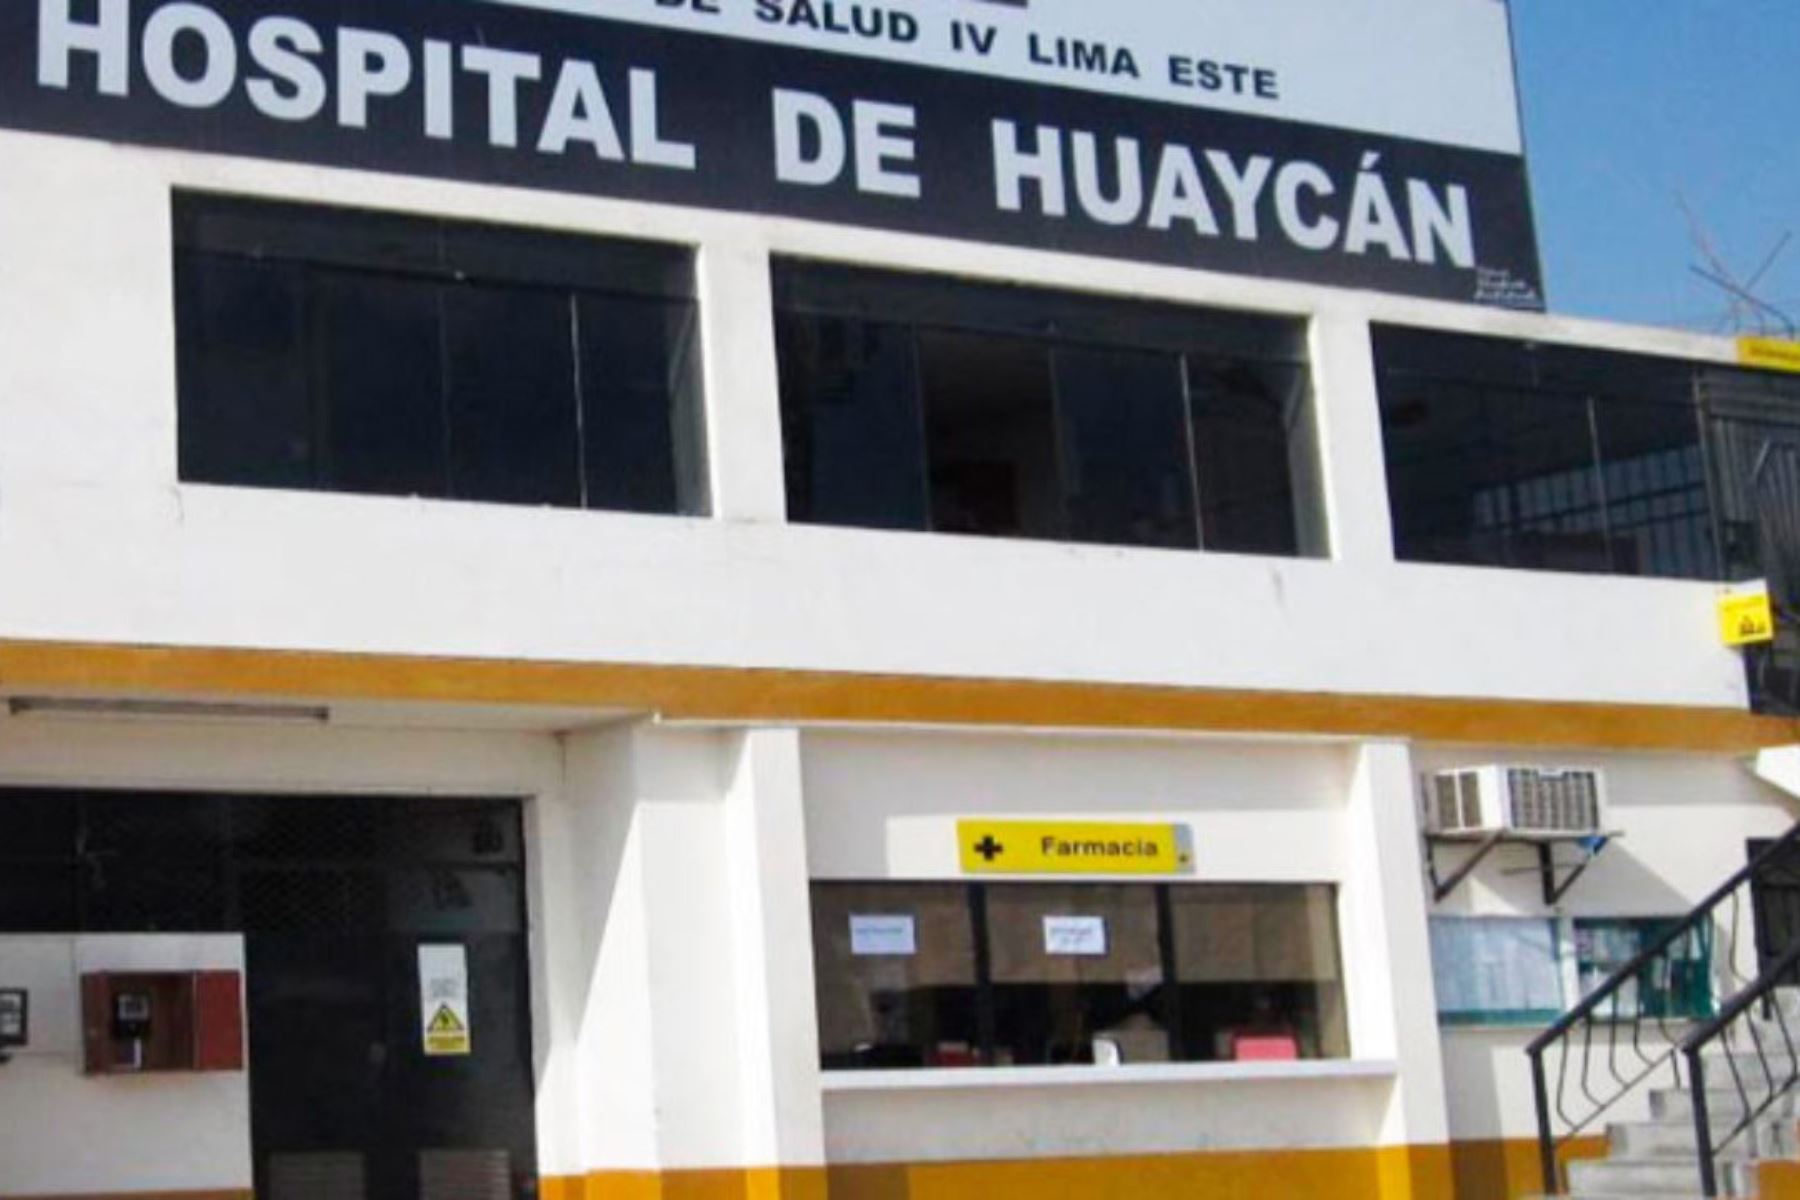 Mejoramiento de los servicios de salud del hospital de Huaycán. Foto: Cortesía/ Andina